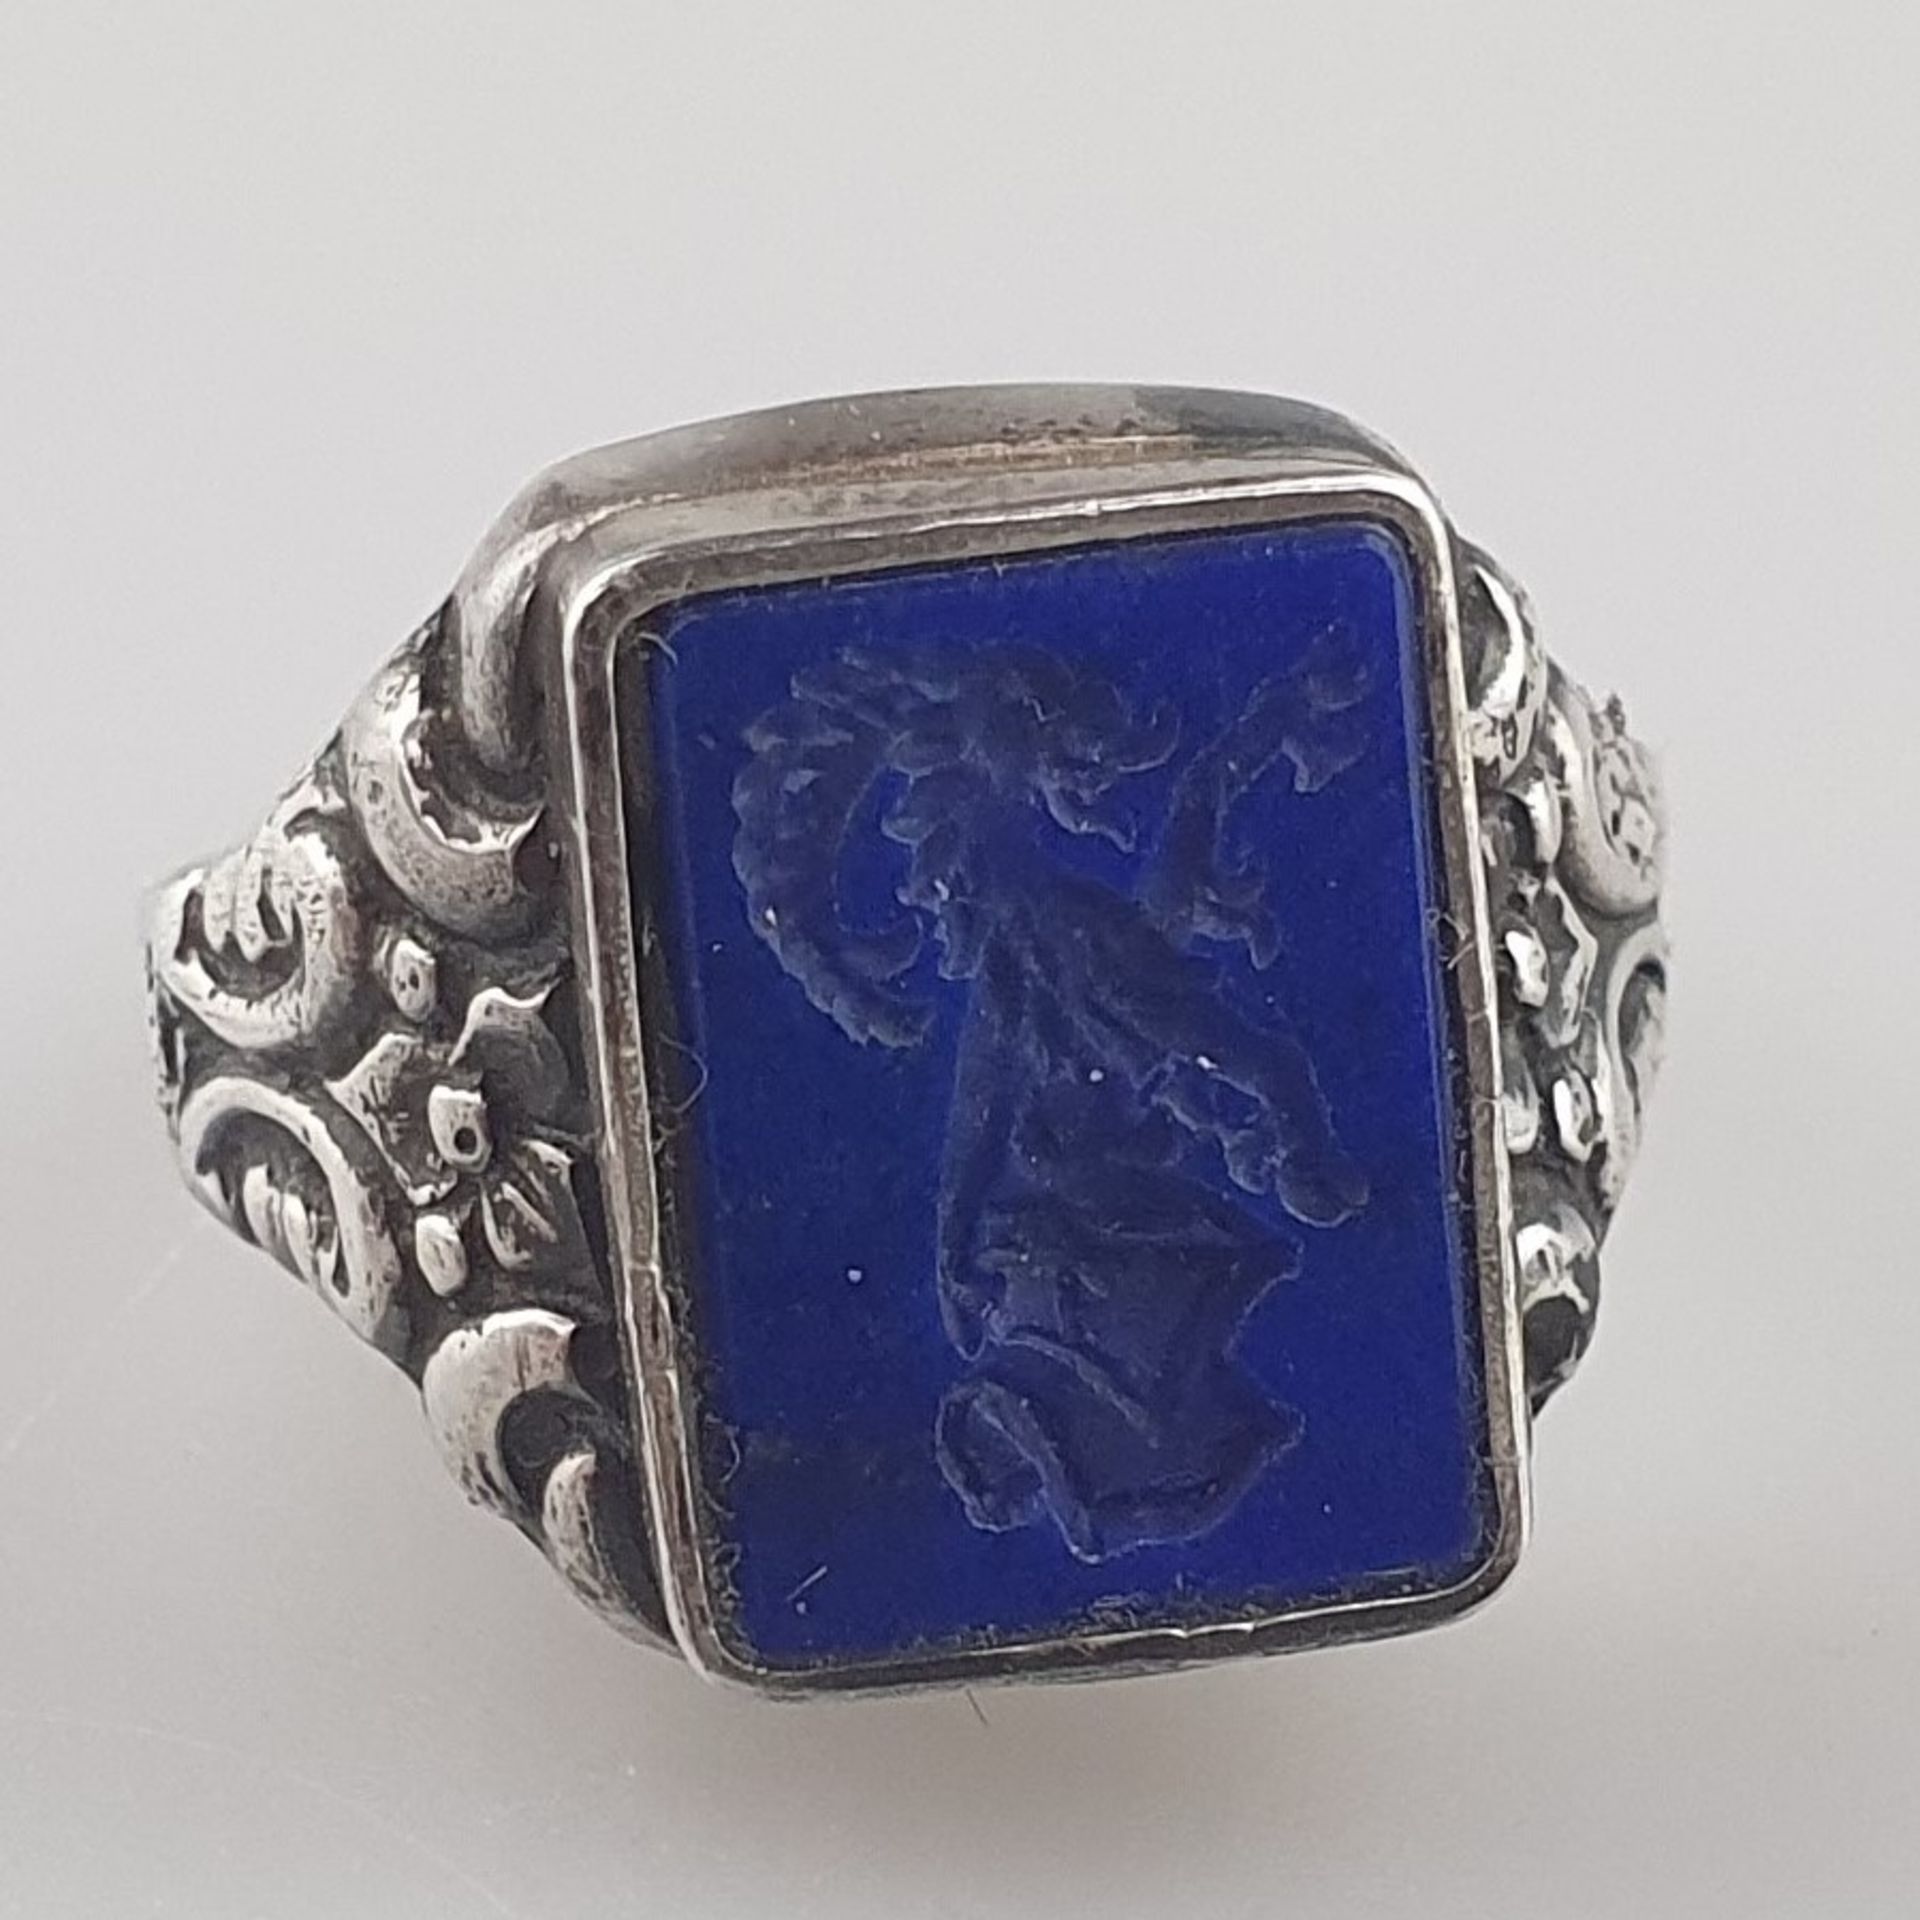 Siegelring - Silberfassung, Schulterpartie mit Jugendstil-Ornamentik, Lapislazuli-Intaglio als Ring - Bild 3 aus 6